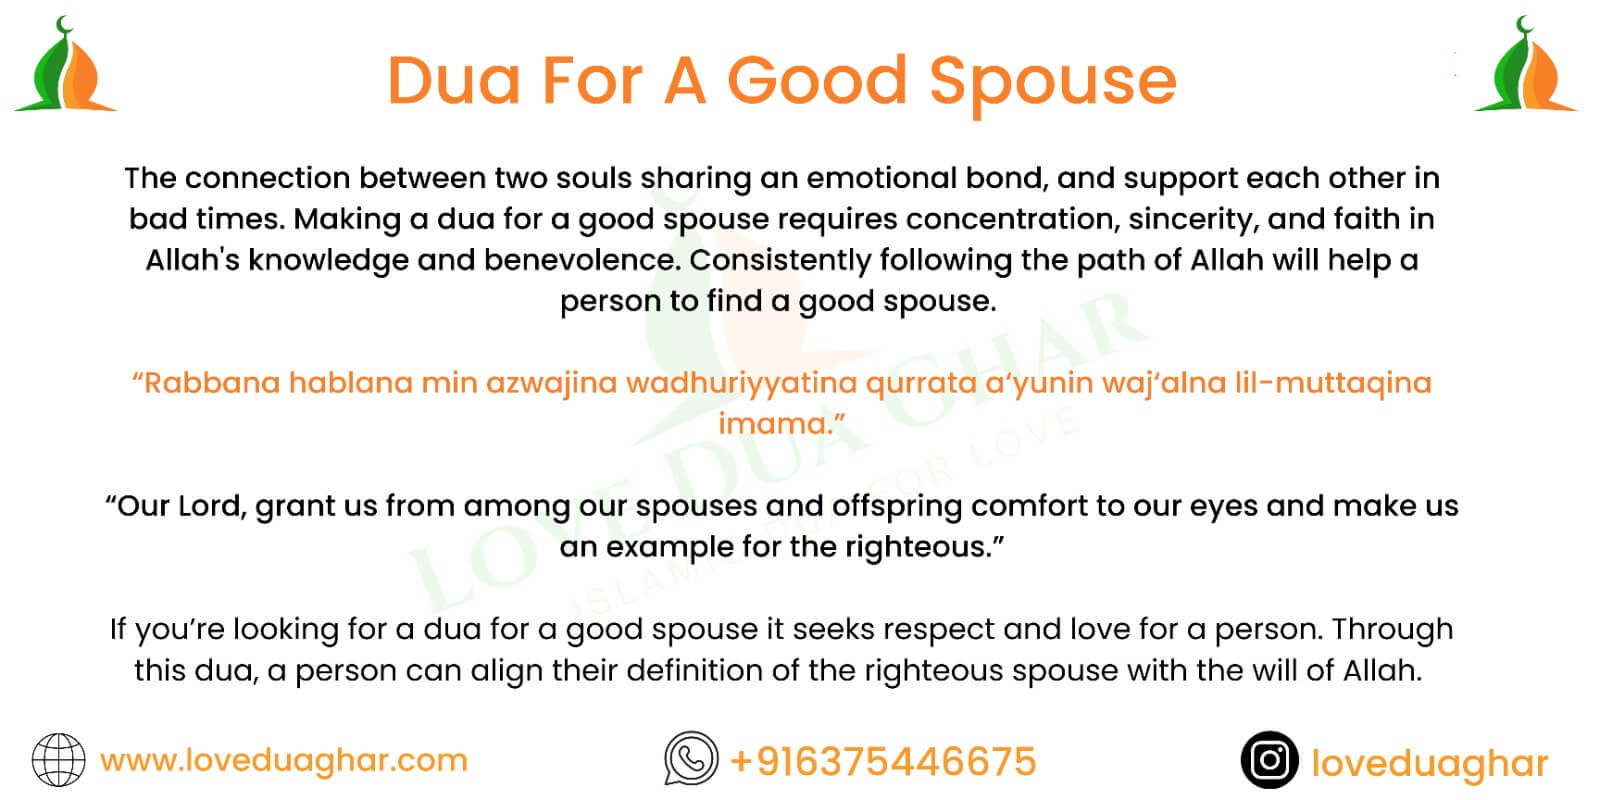 Dua for a Good Spouse